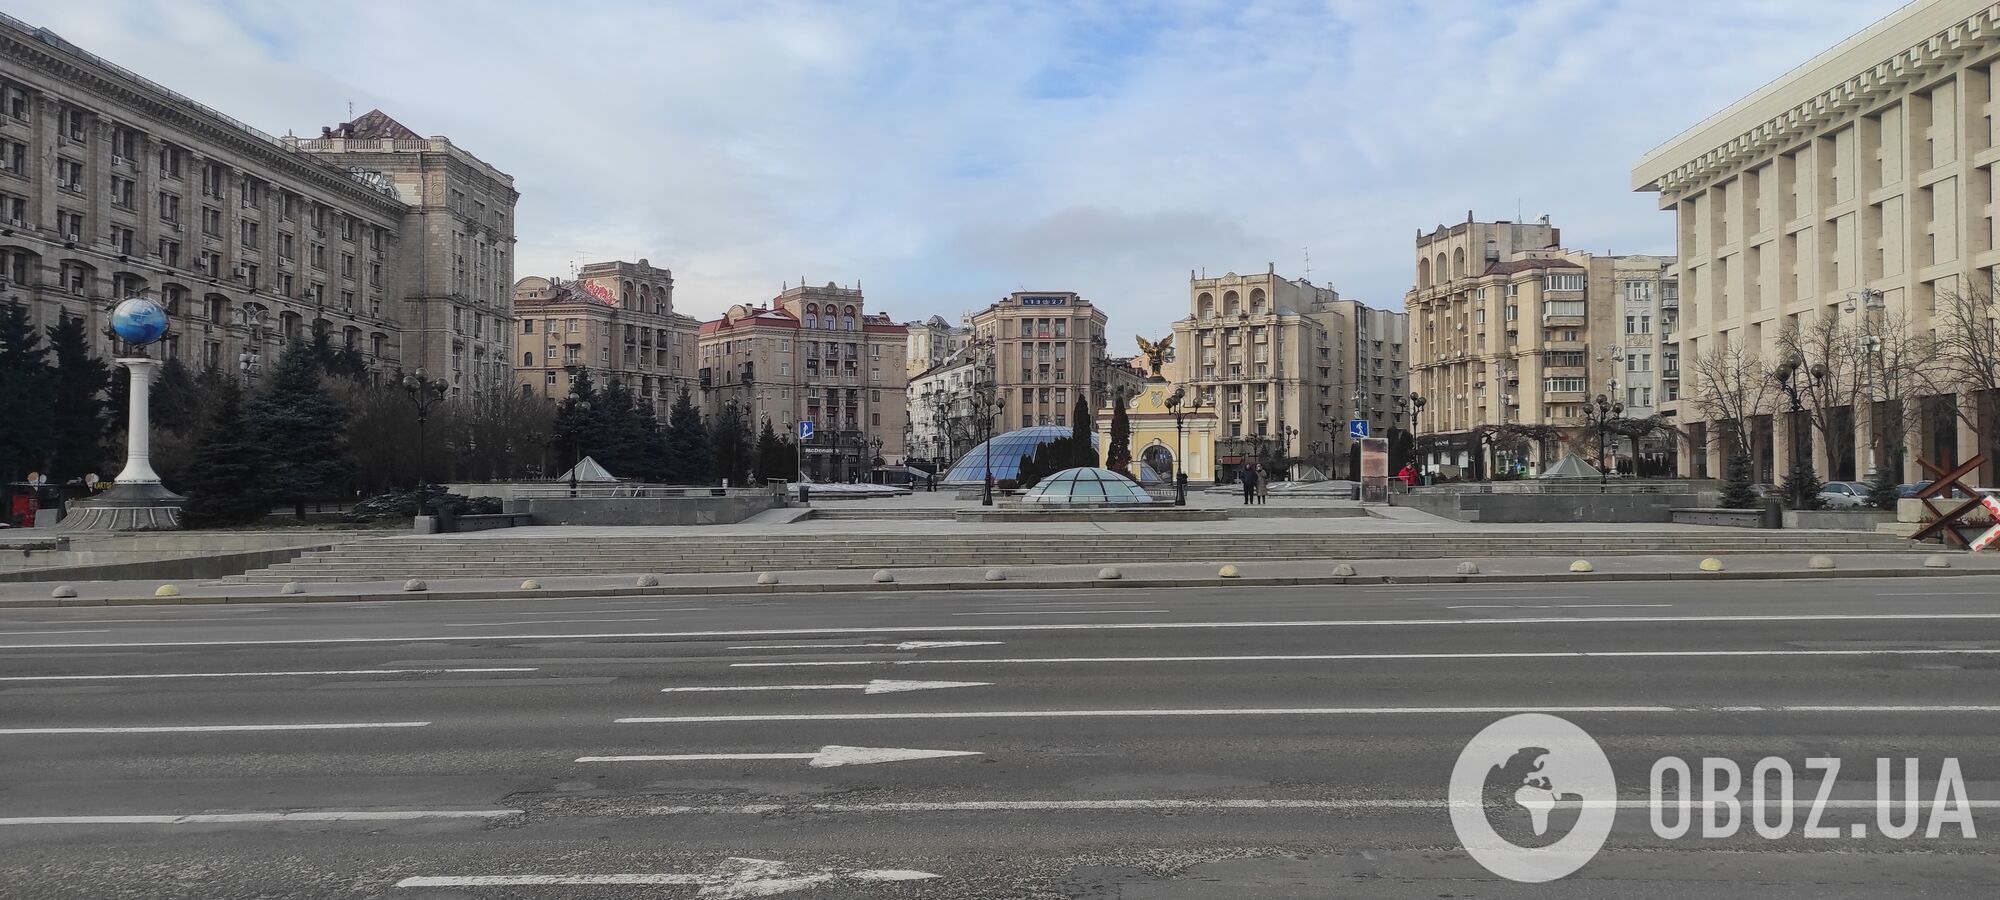 В сети показали, как выглядело здание Киевской городской думы на Майдане Незалежности. Исторические фото